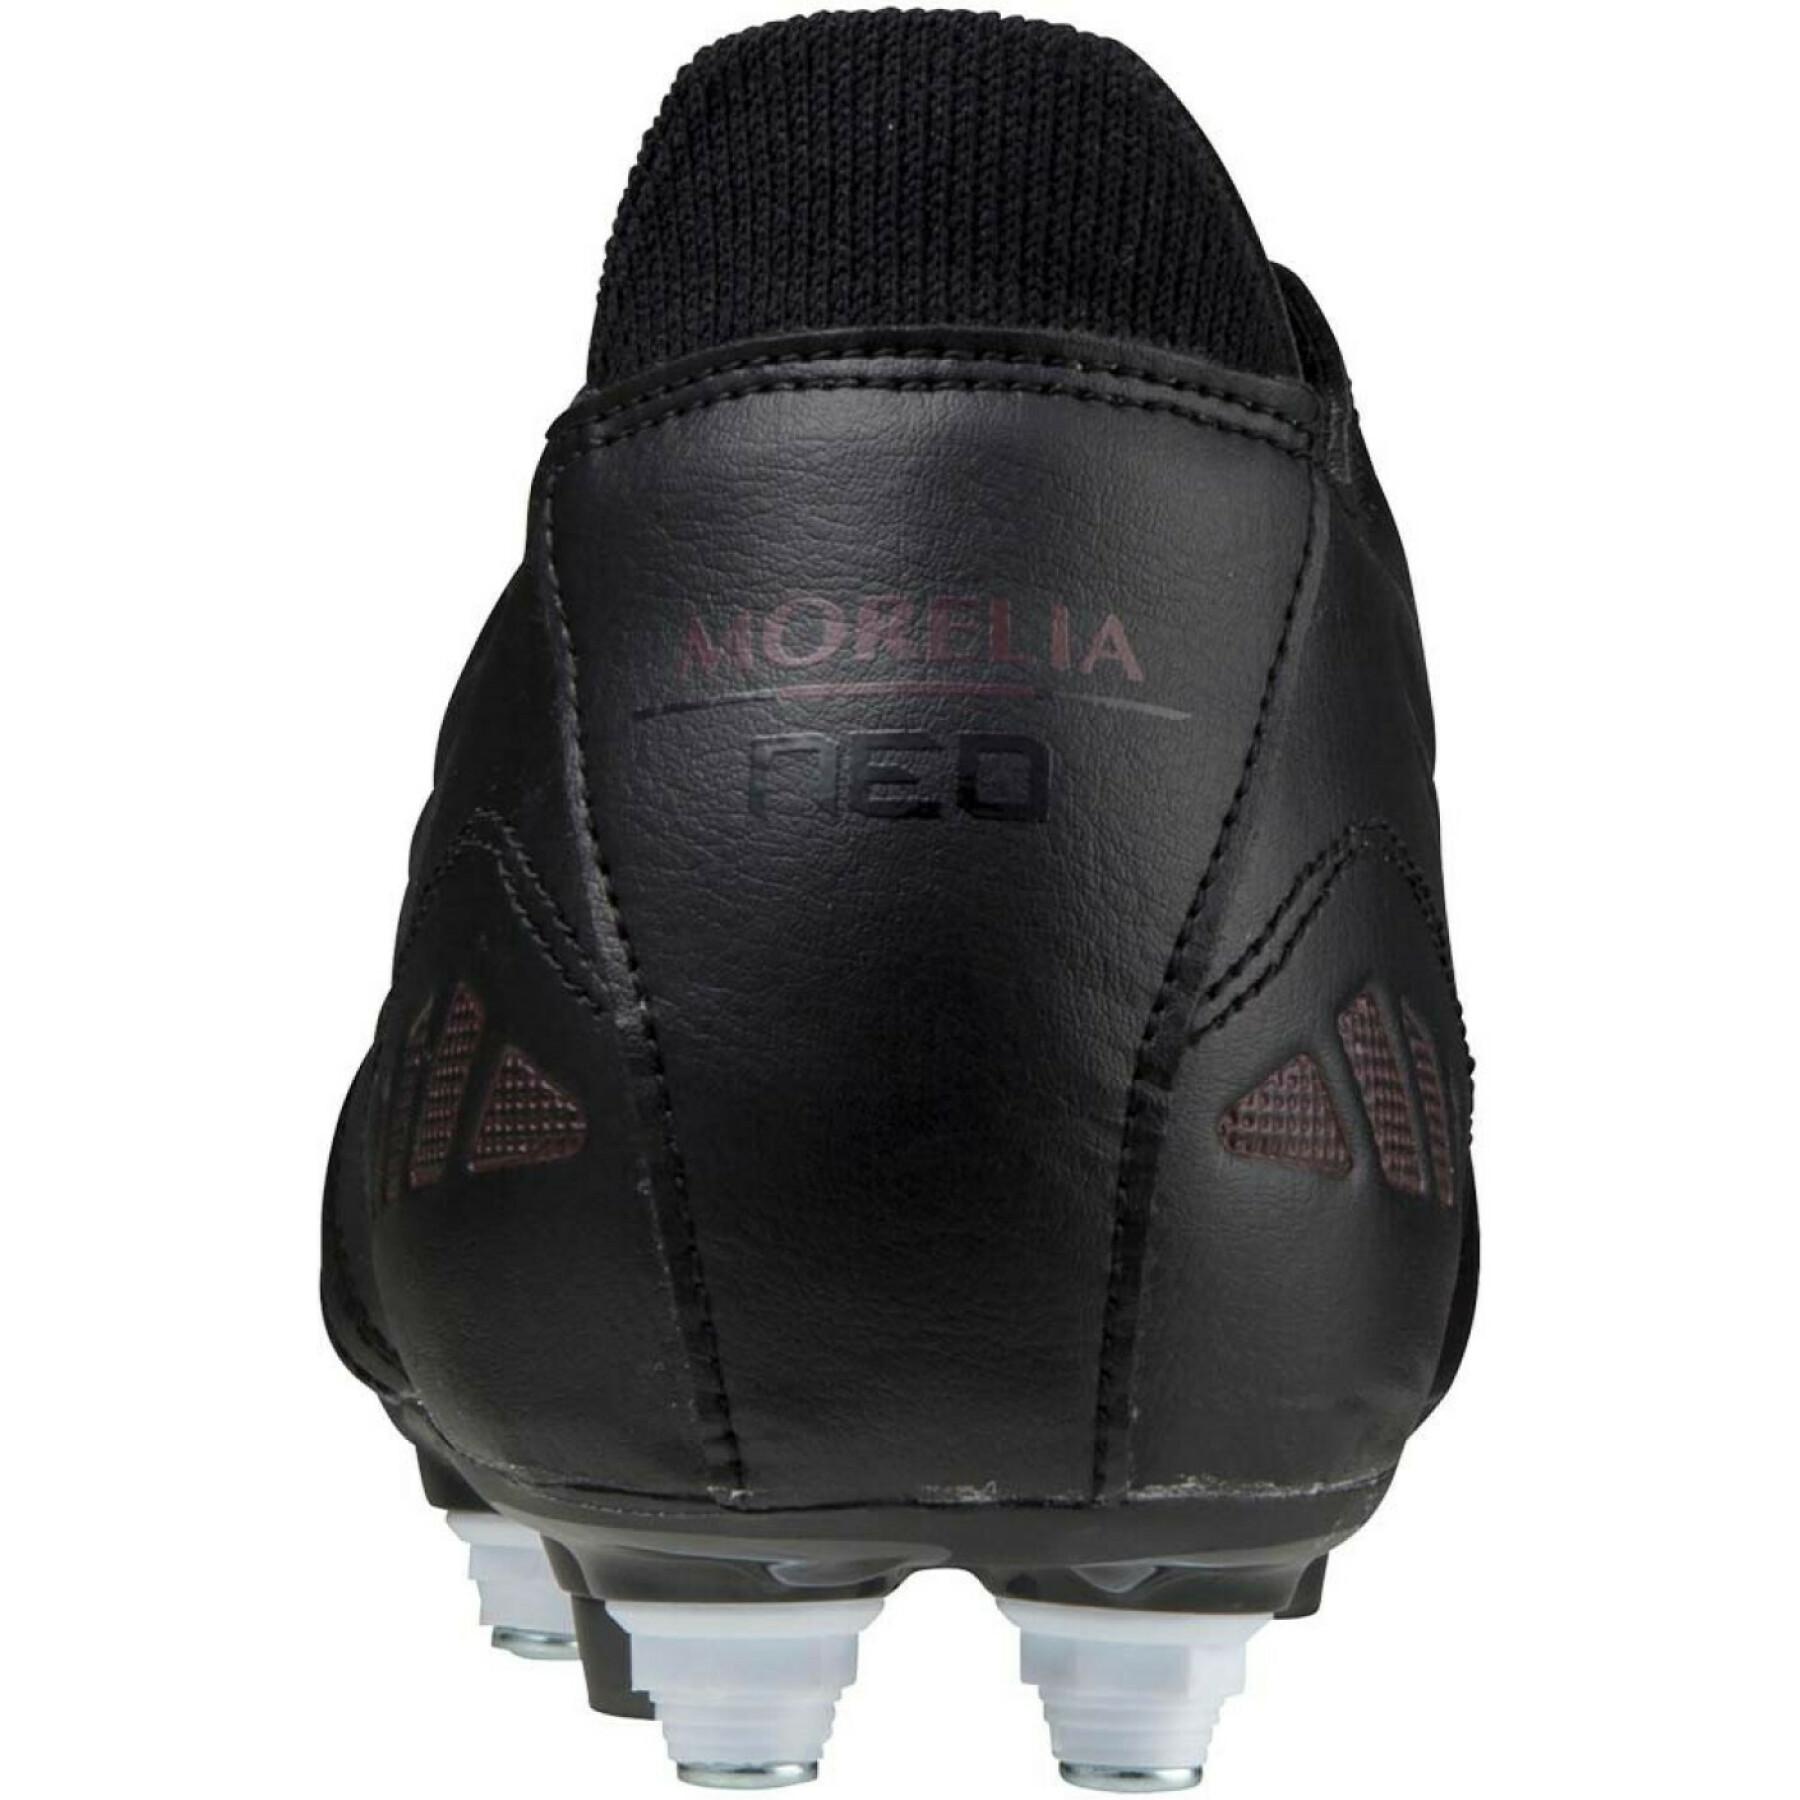 Chaussures de football Mizuno Morelia Neo